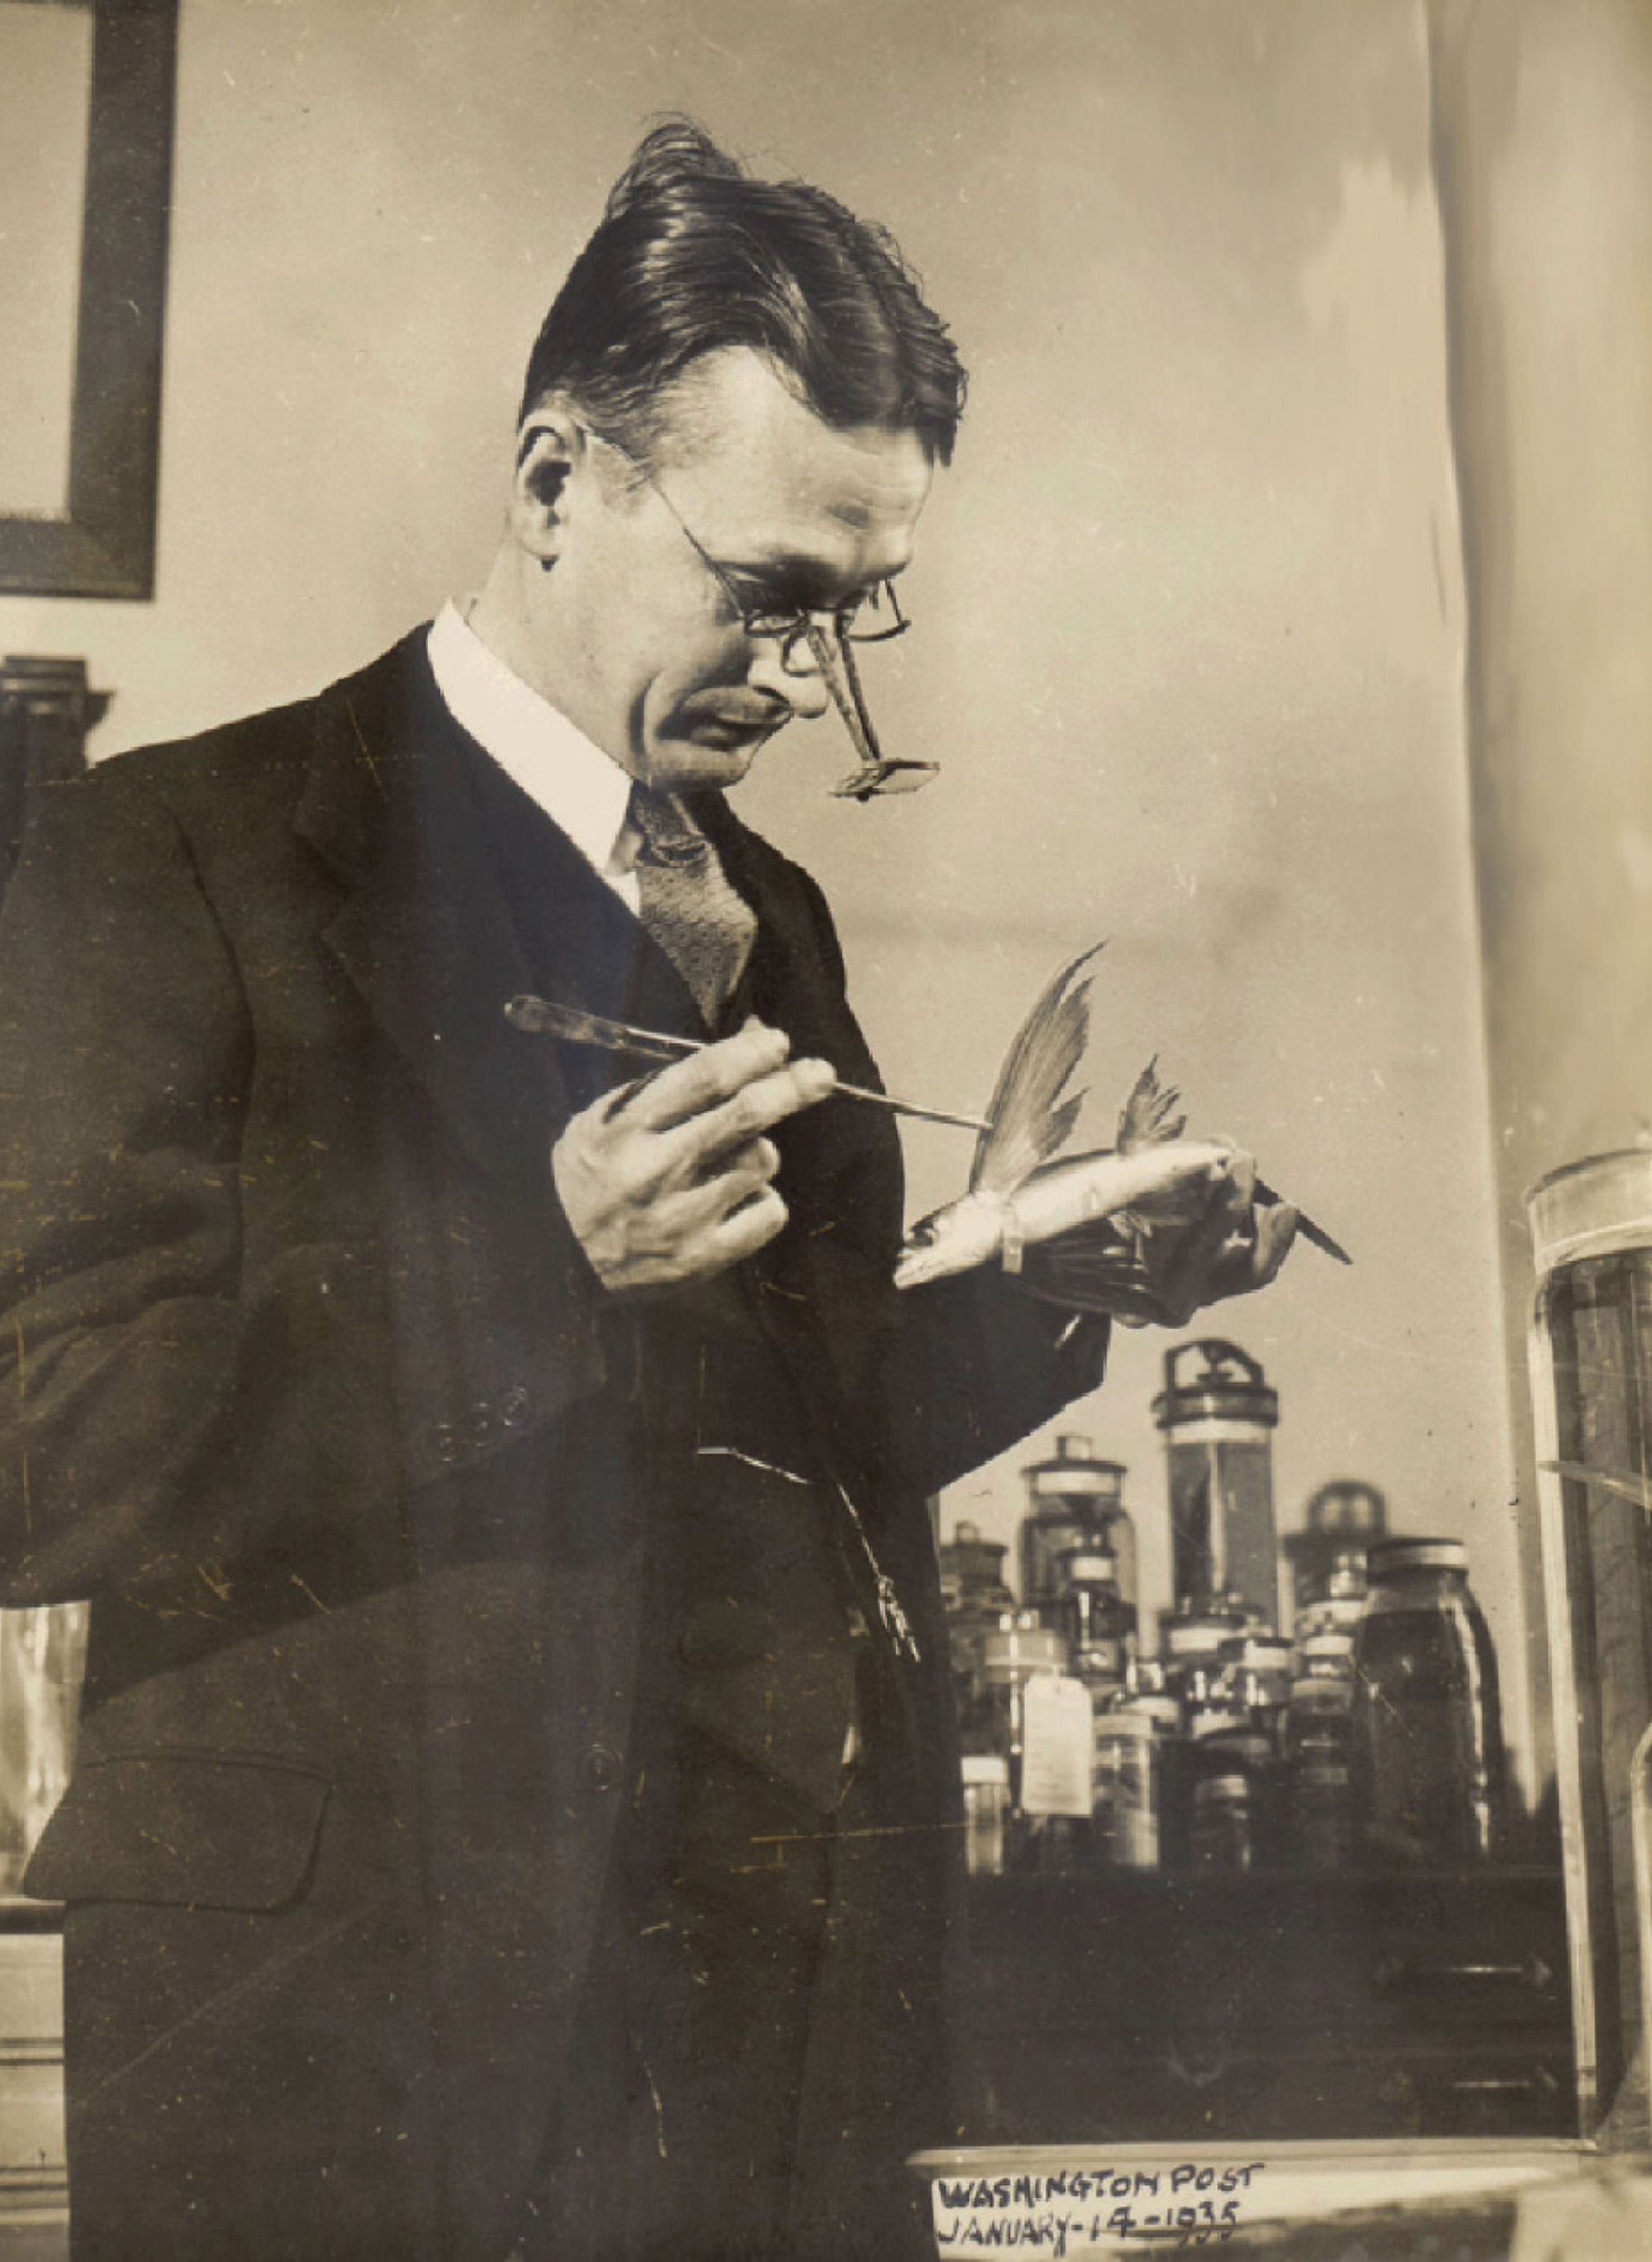 Charles M. Breder examining a flying fish. Washington Post, 14 January 1935.